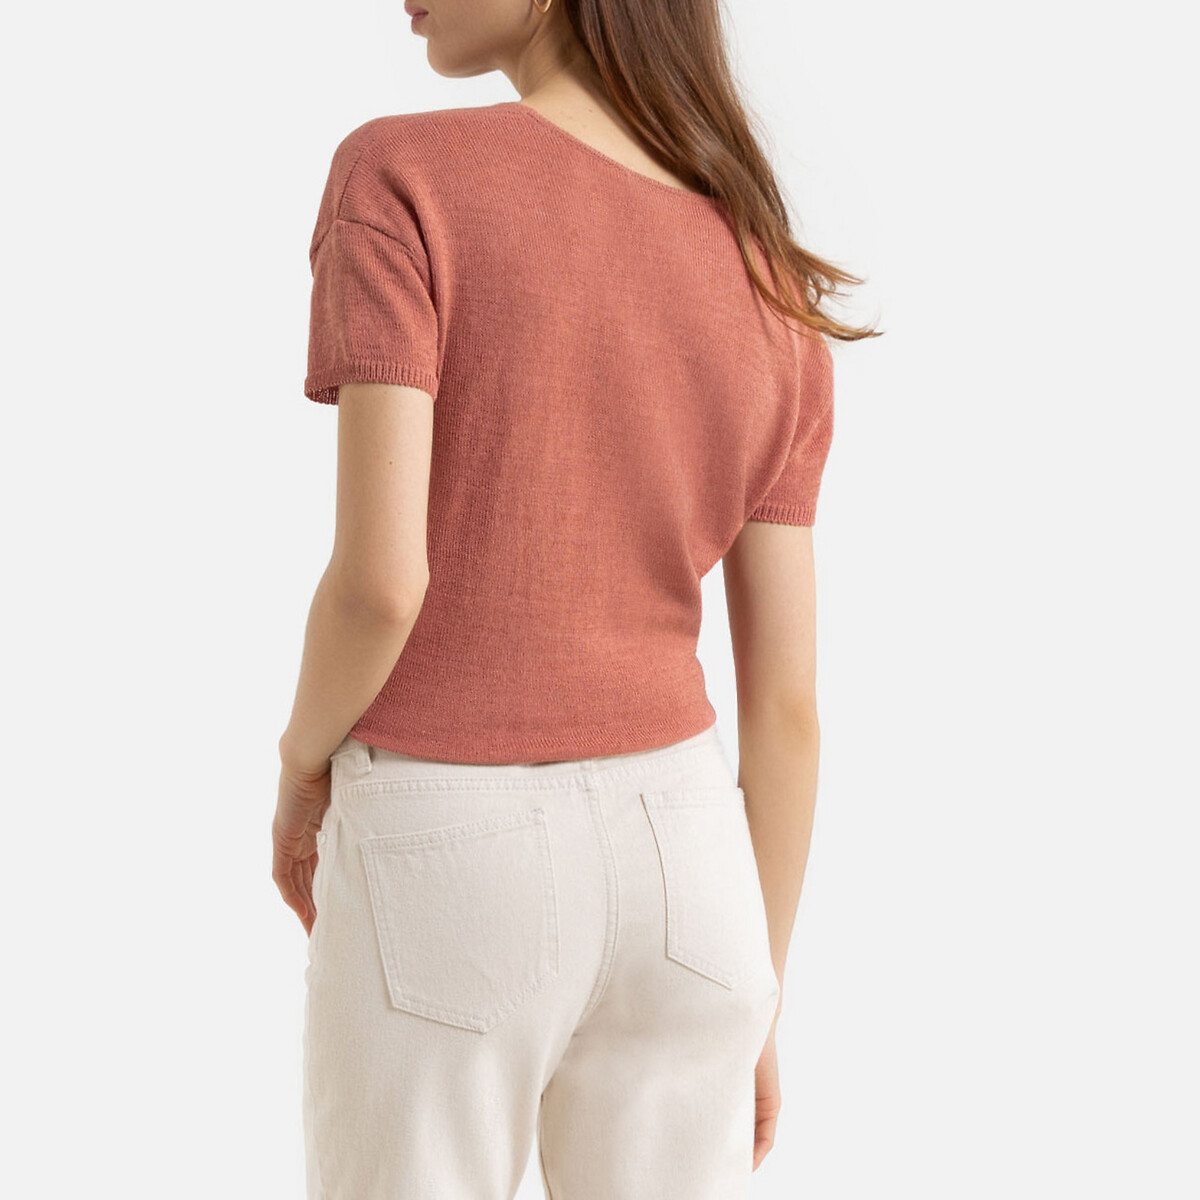 Пуловер La Redoute С V-образным вырезом из тонкого трикотажа XL розовый, размер XL - фото 4